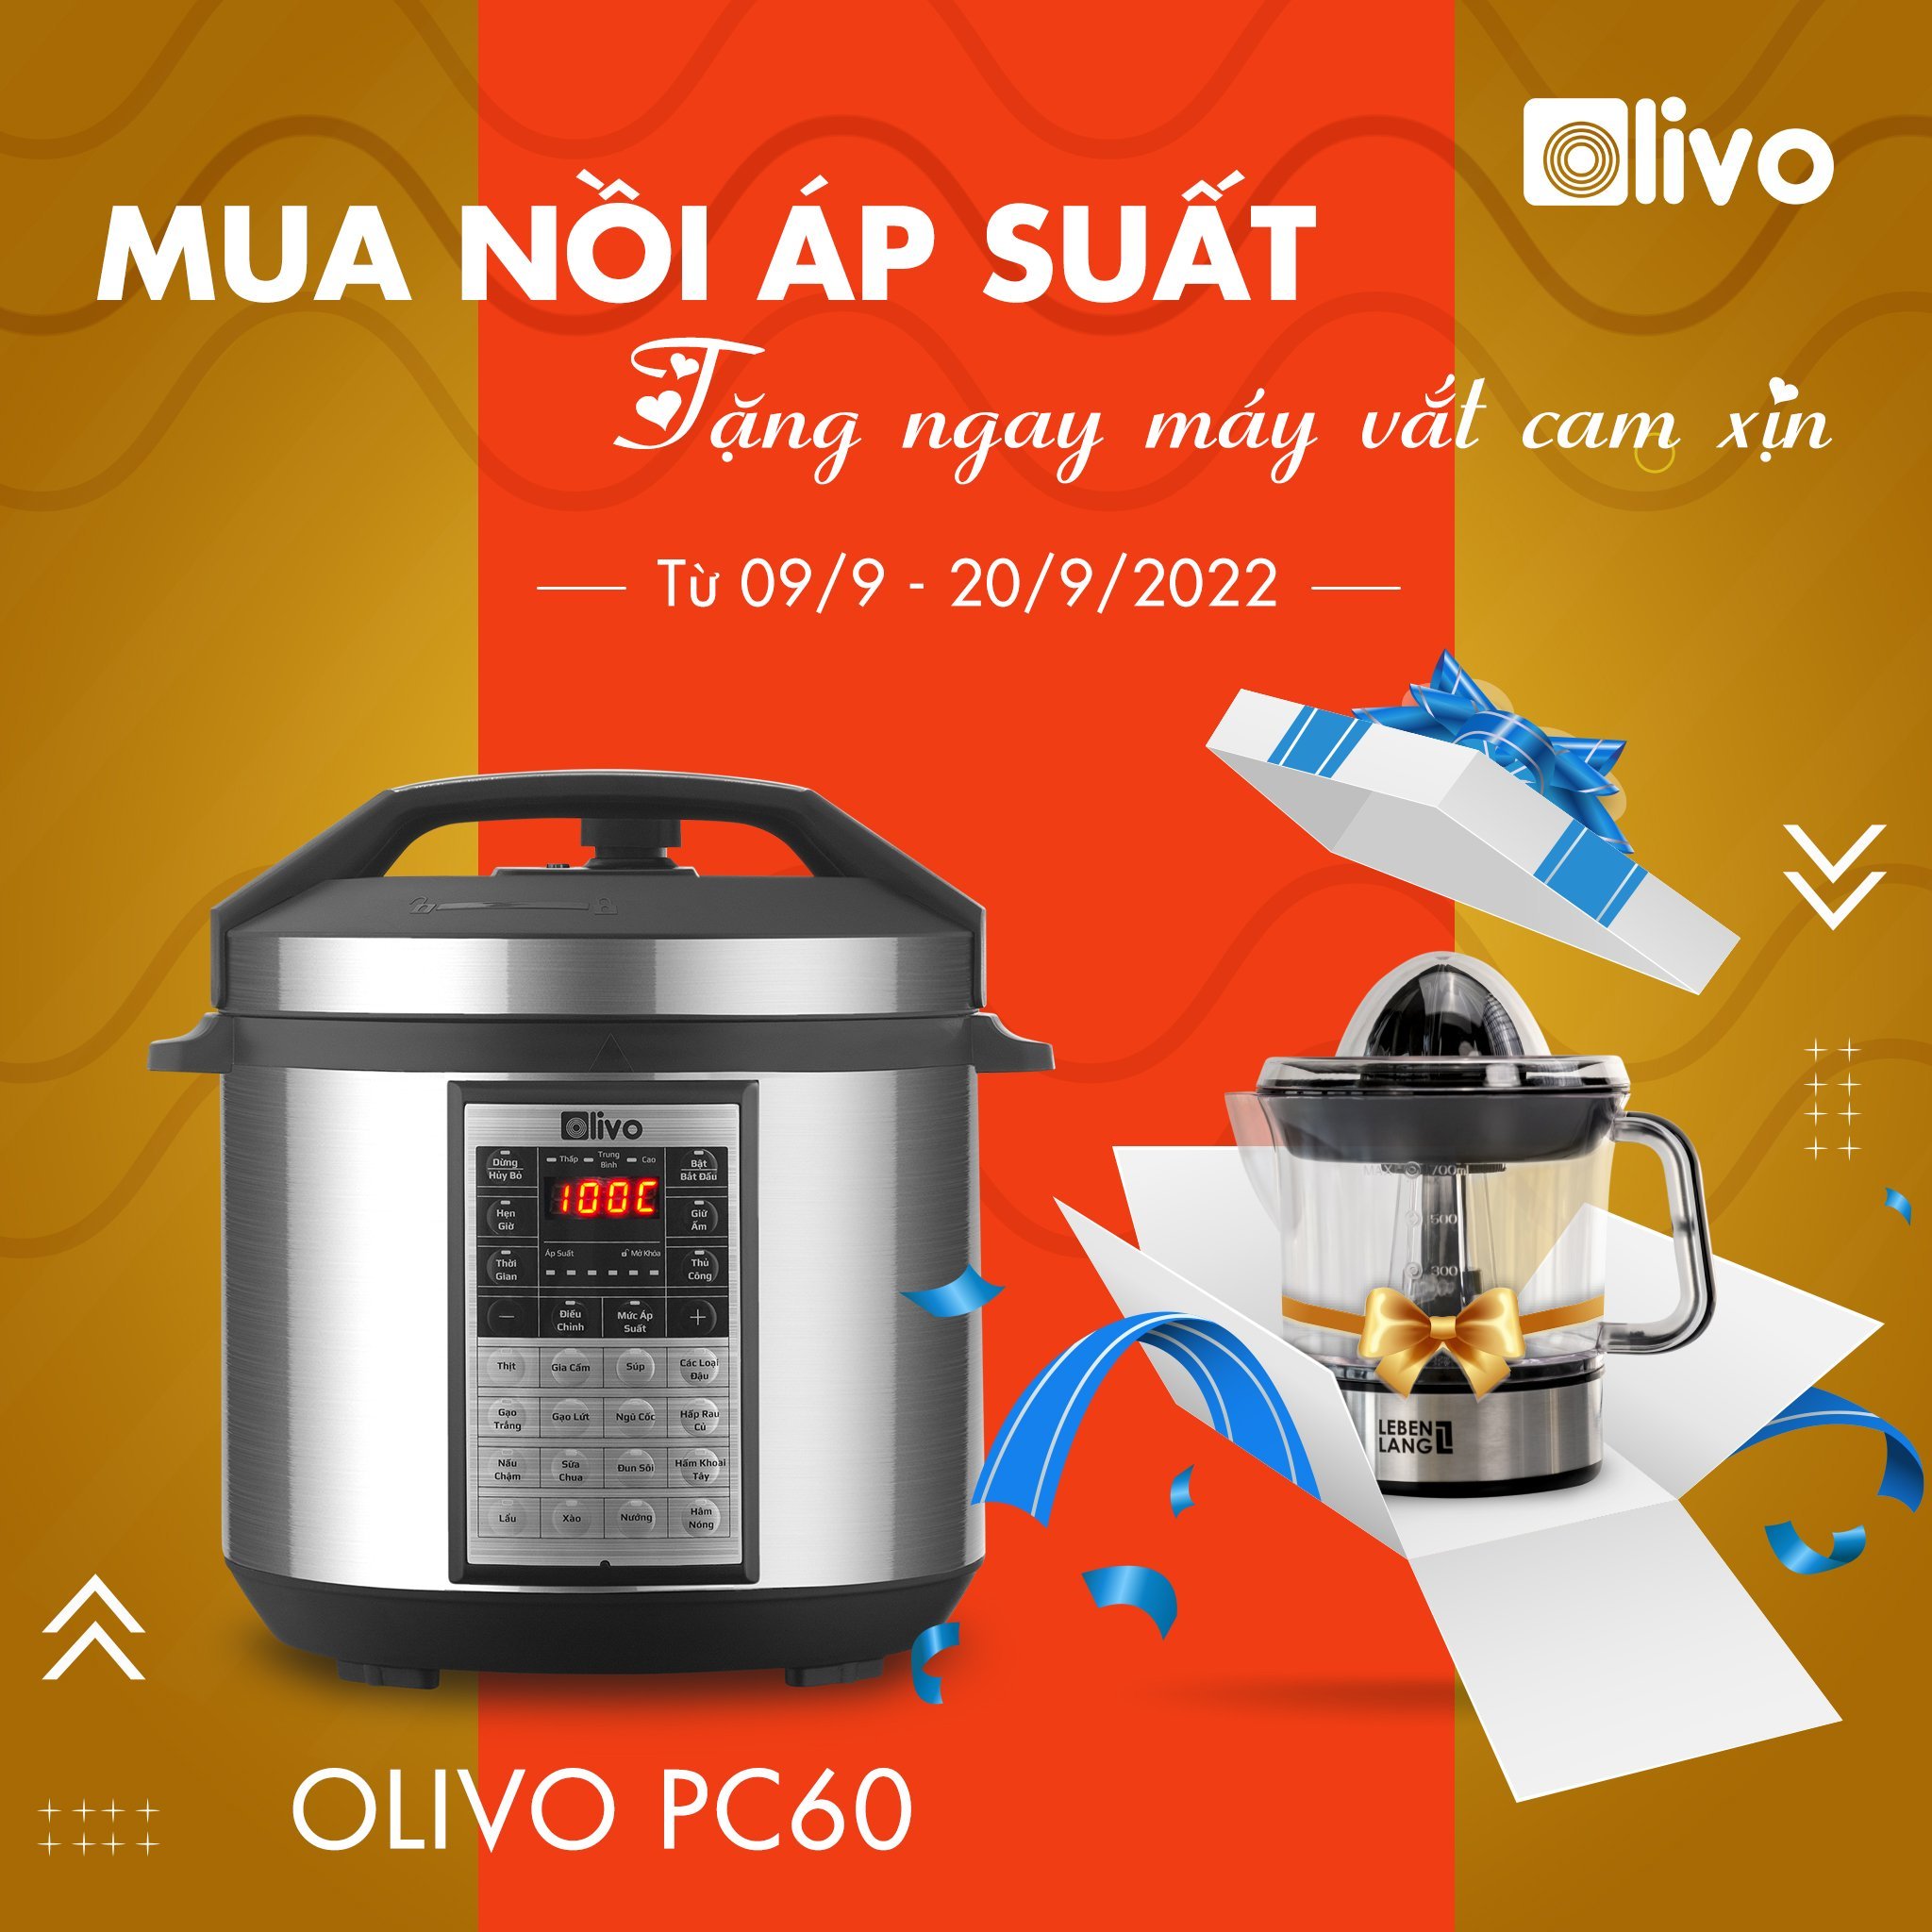 Nồi Áp Suất Điện OLIVO PC60 – Tặng máy vắt cam